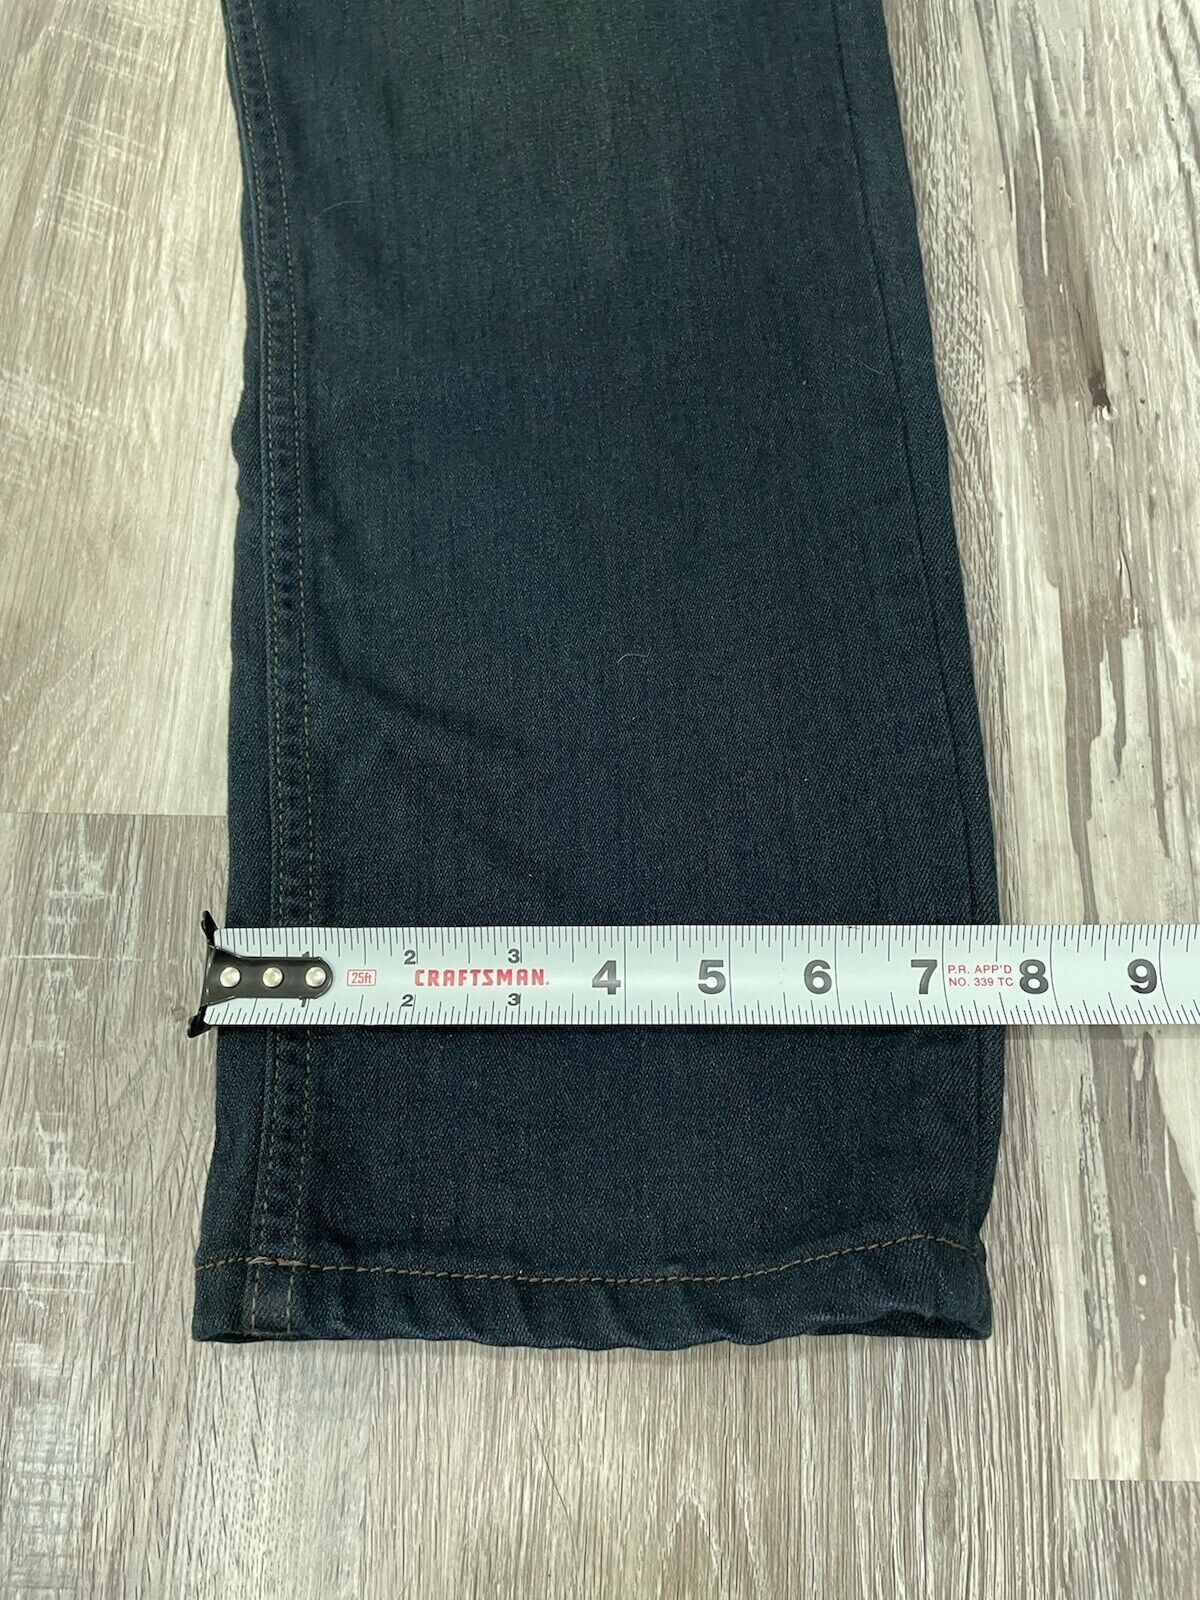 PAIGE Jeans Mens 33/30 Lennox Straight Blue Denim… - image 6